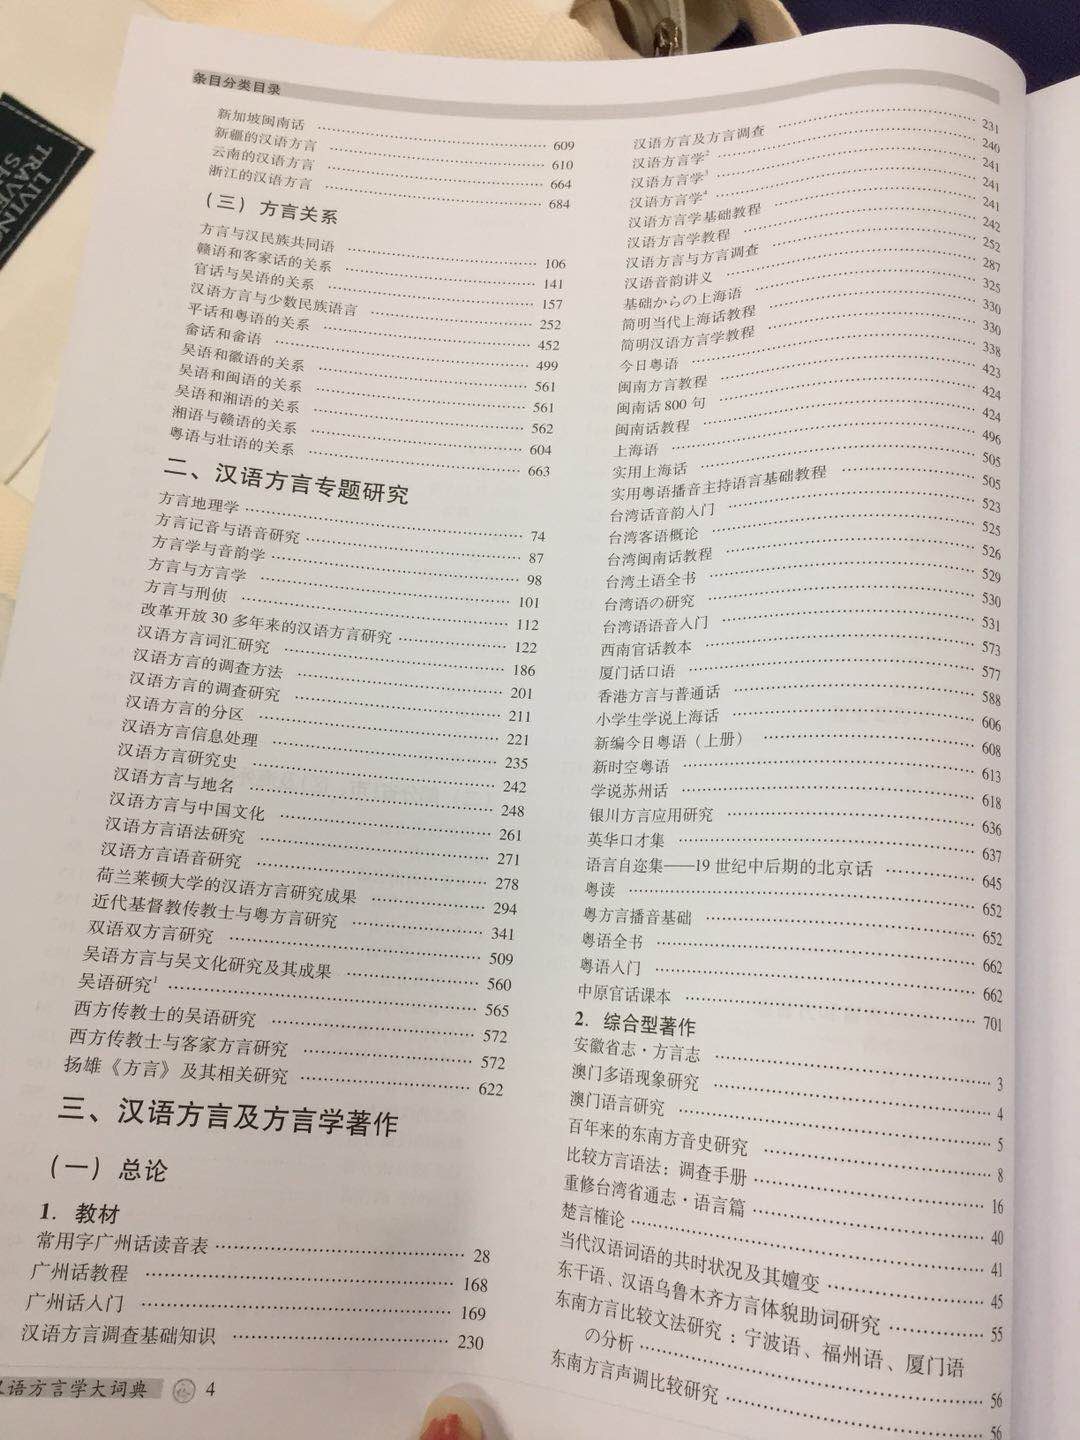 汉语方言学大词典是一部集方言学研究的大成之作，非常有利于方言学的入门和学习，也能对目前国内方言学的研究有一个宏观的认识和概括。半价购买的，非常值得！